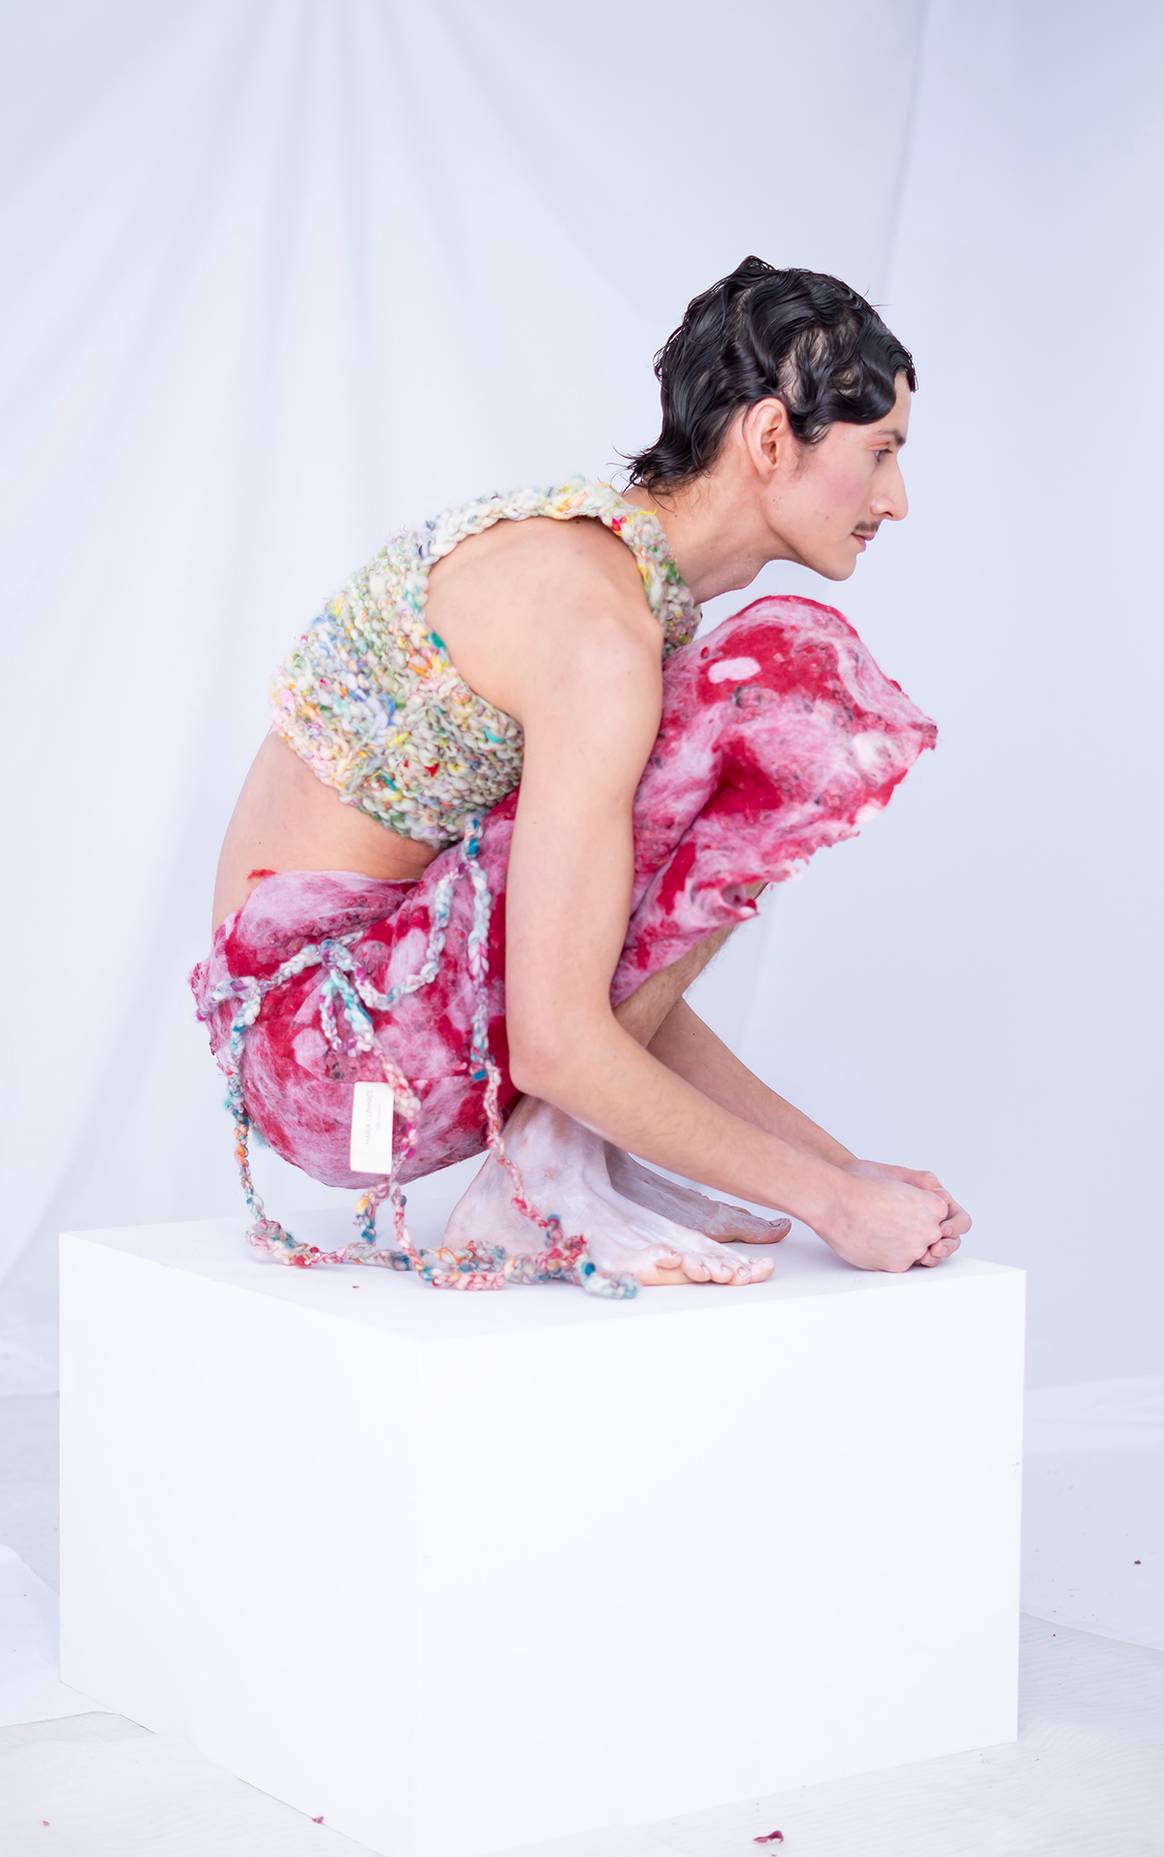 Colección “Back to Fashion” de María Lunares, fotografía de campaña.